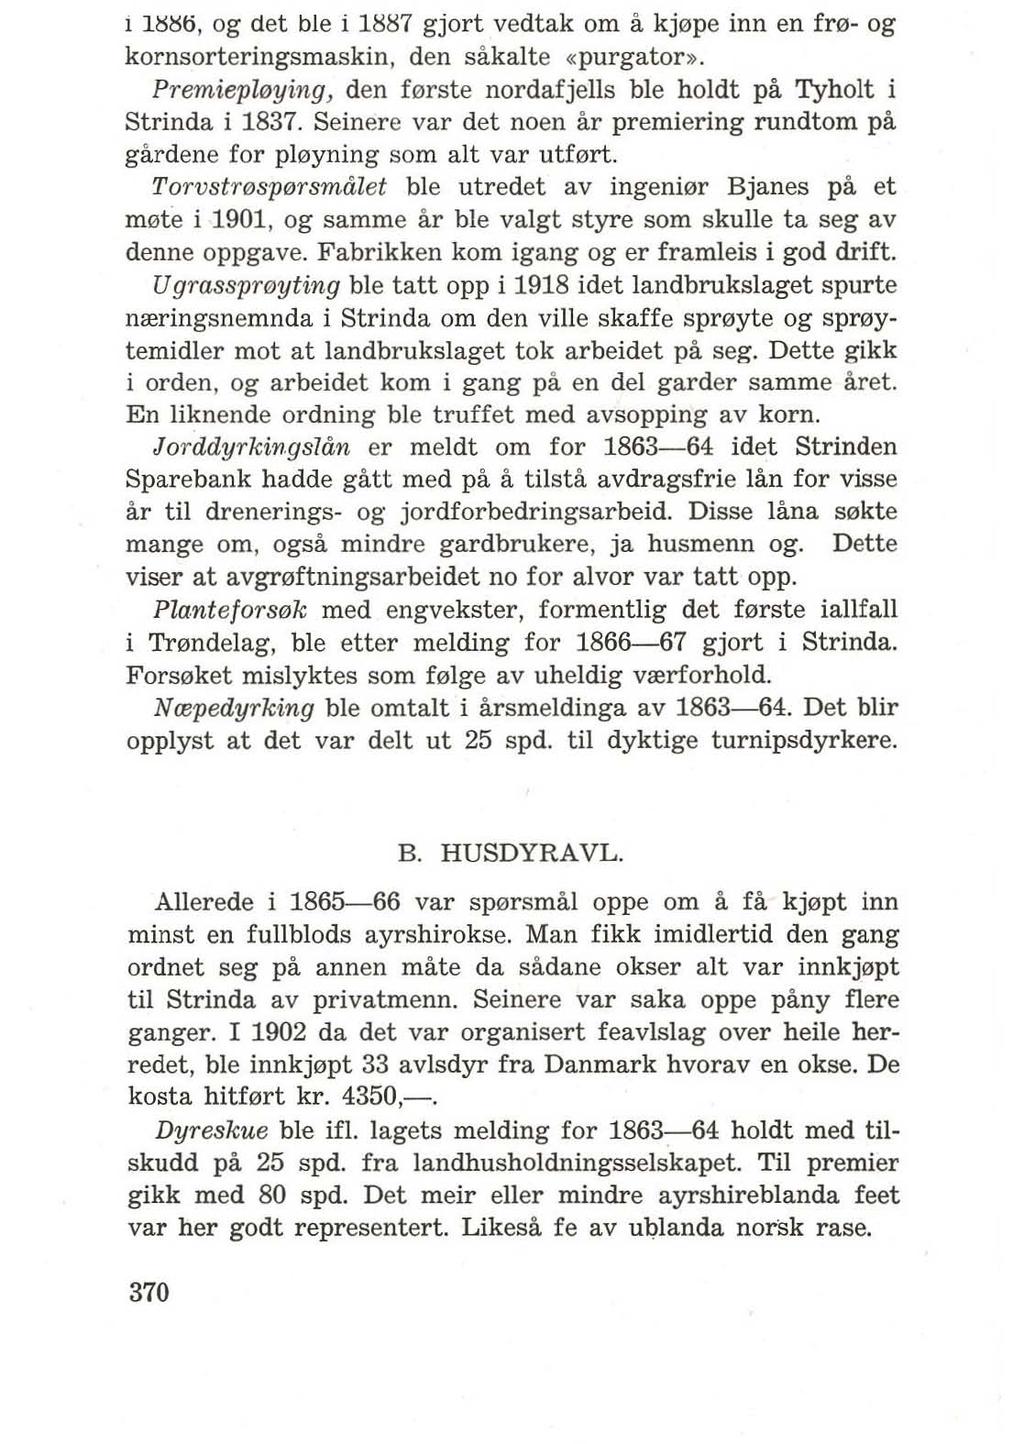 1 US~ti, og det ble i 1iiii7 gjort vedtak om a kj0pe inn en fr0- og kornsorteringsmaskin, den sakalte «purgator». Premiepll!Jying, den f0rste nordafjells ble holdt pa Tyholt i Strinda i 1837.